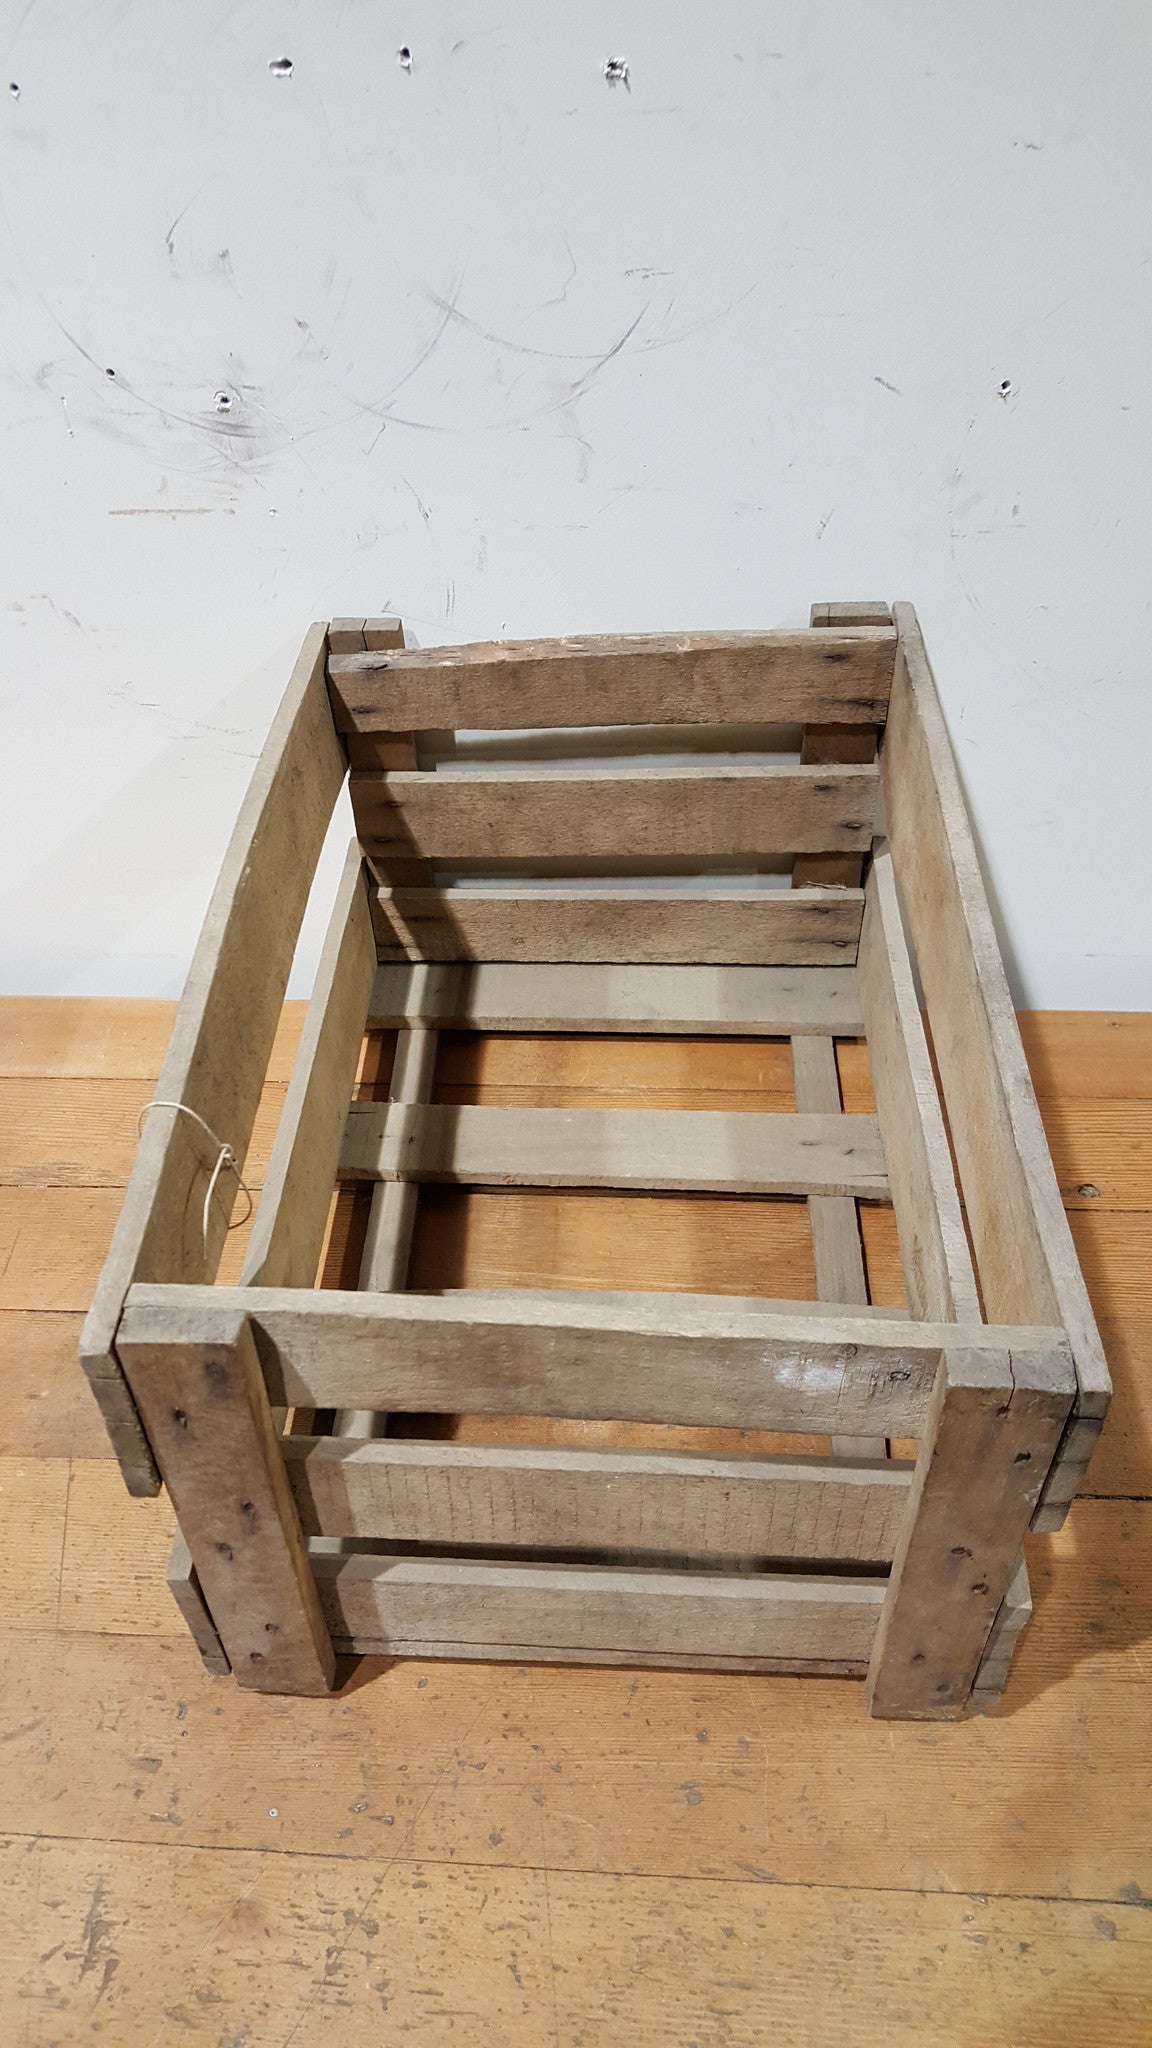 Wooden German Crate